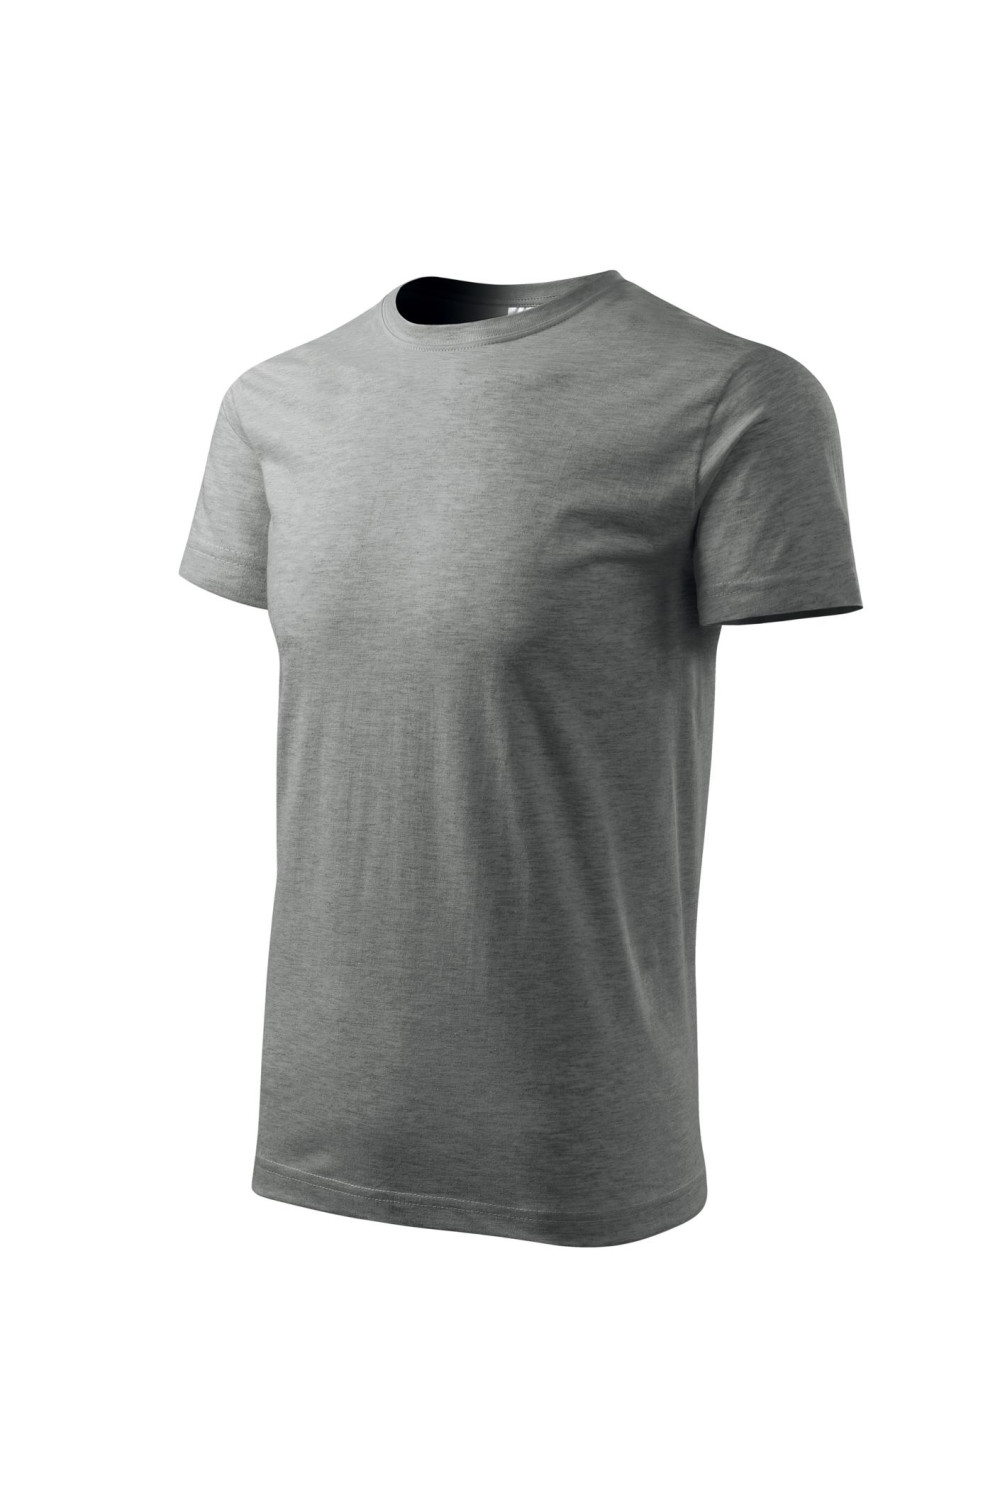 Koszulka męska 100% bawełna BASIC 129  kolor ciemnoszary melanż